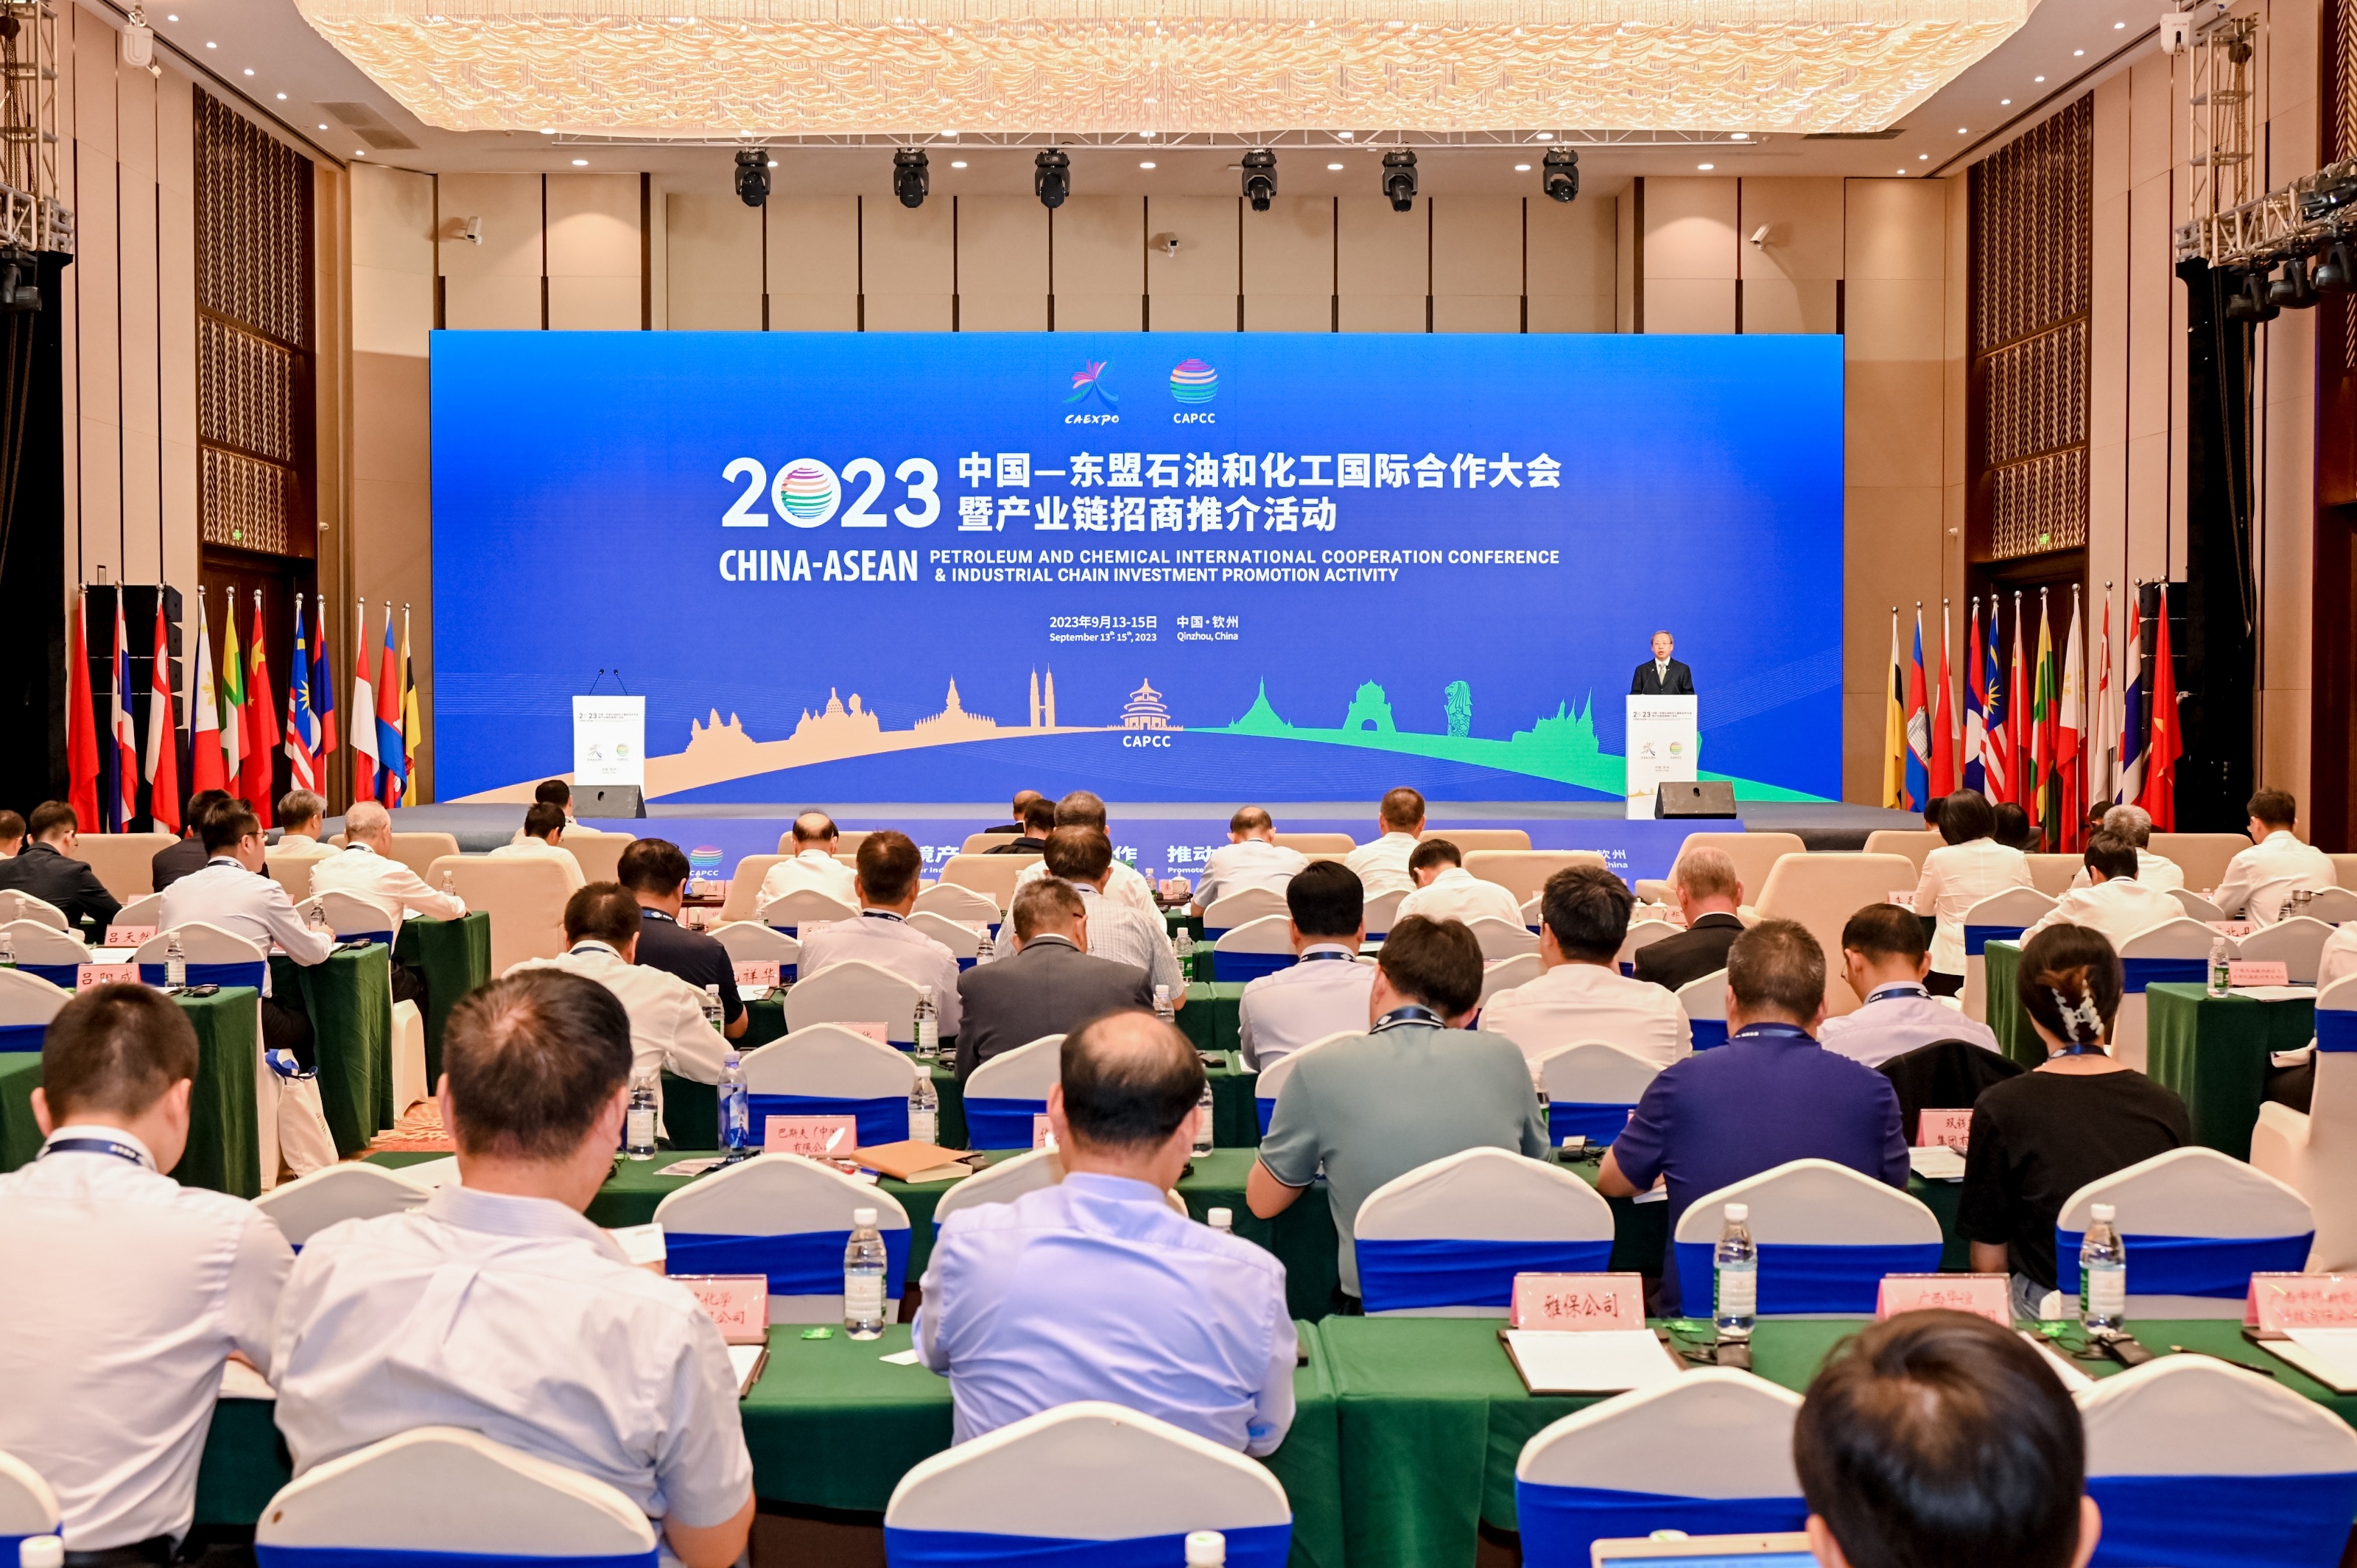 2023中國—東盟石油和化工國際合作大會共商合作新機遇